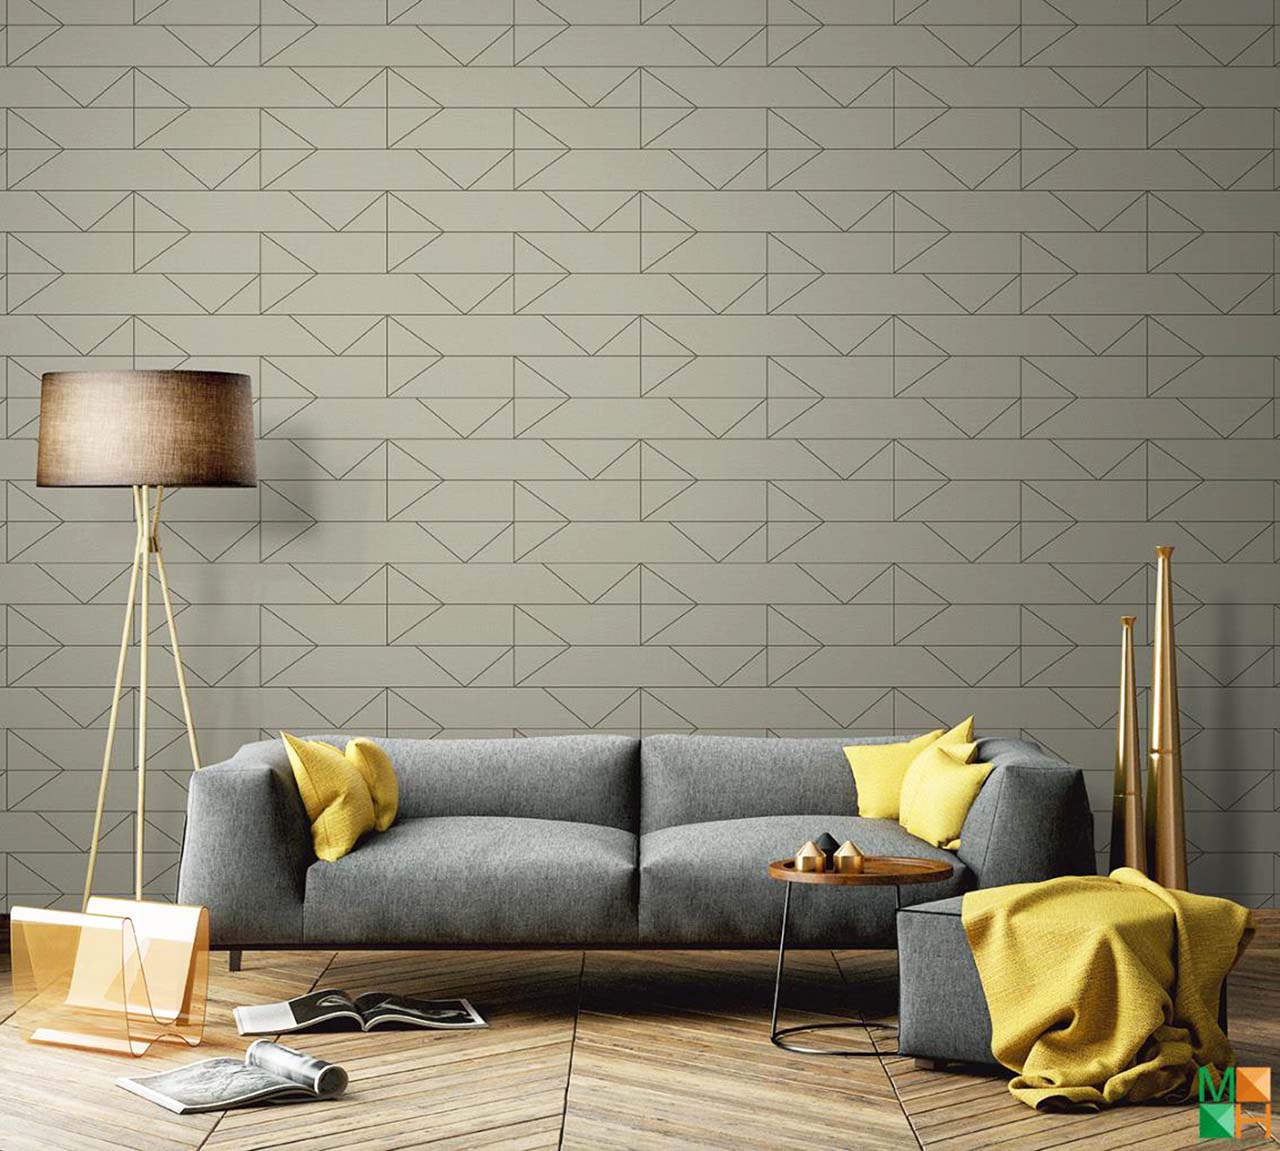 Các loại tấm ốp tường - Giấy dán tường đẹp cho không gian ngôi nhà bạn